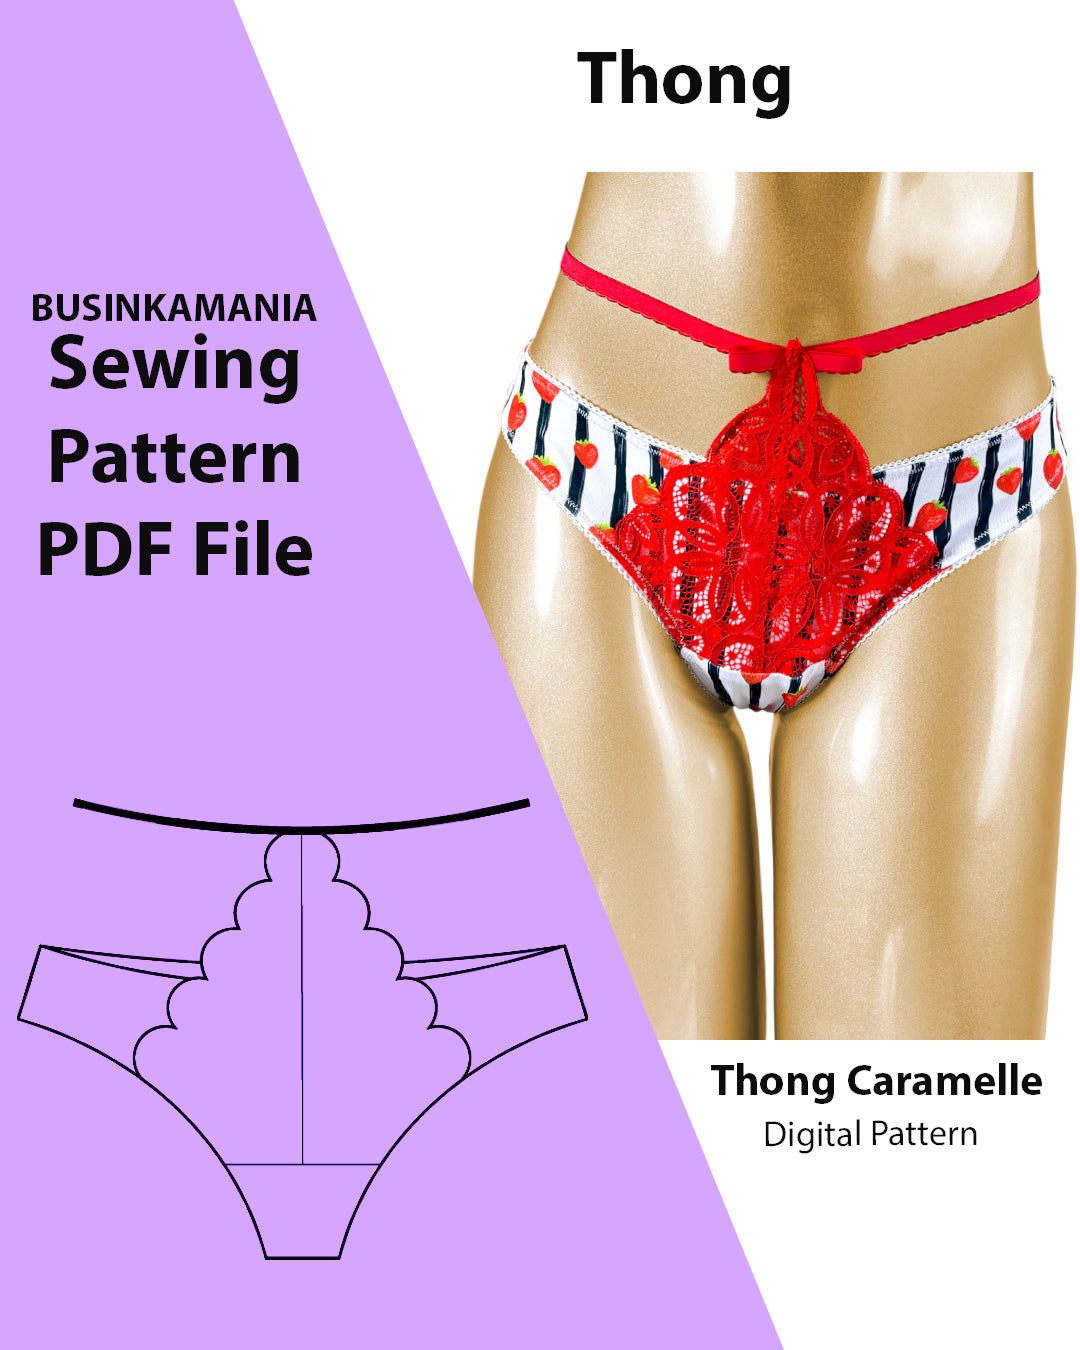 Thong Caramelle Sewing Pattern – BusinkaMania